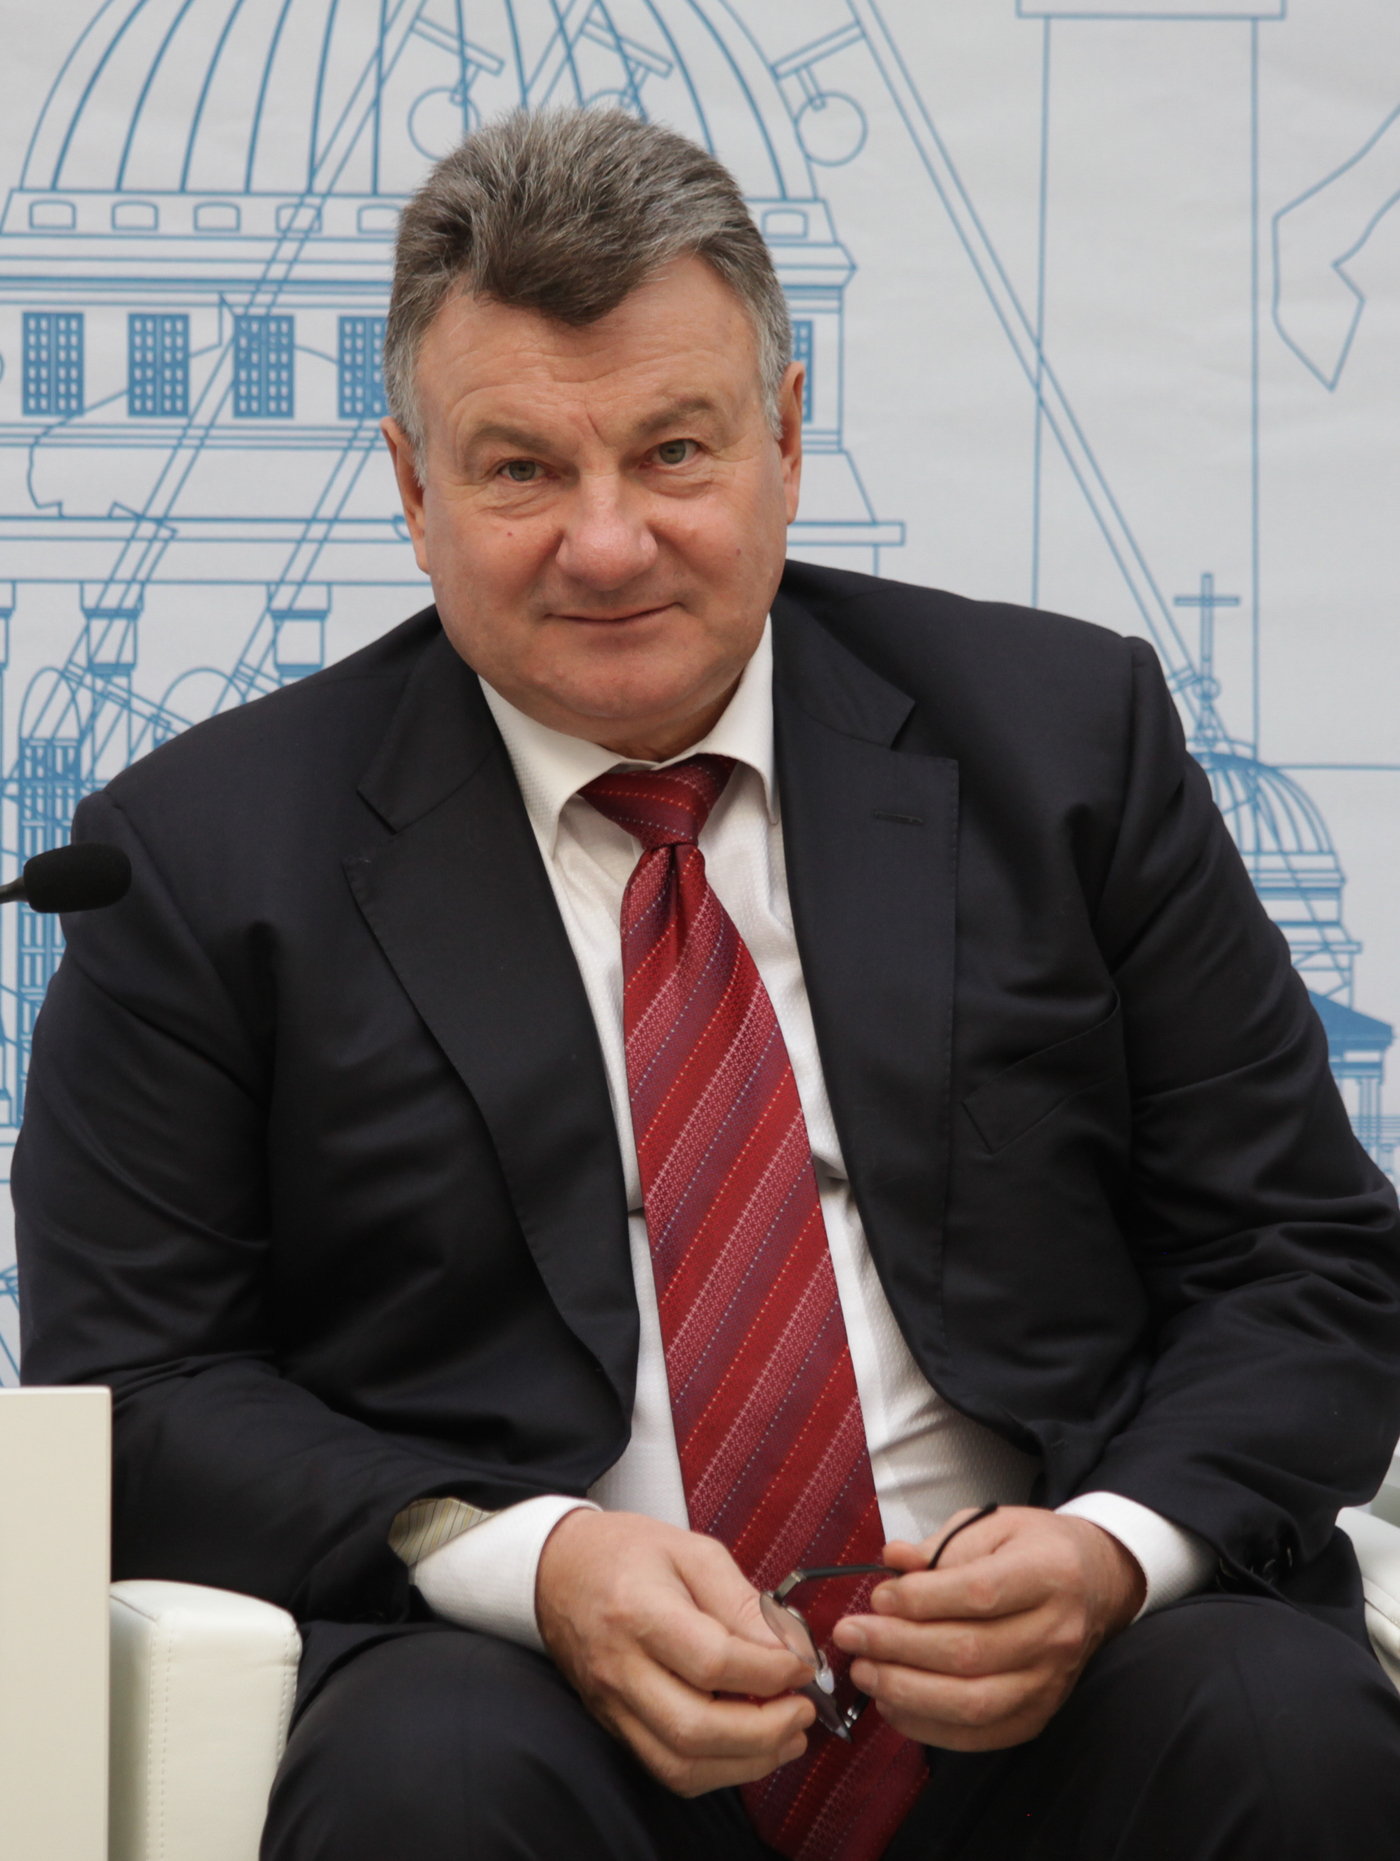 Абросимов Александр Васильевич — Уполномоченный по защите прав предпринимателей в Санкт-Петербурге 